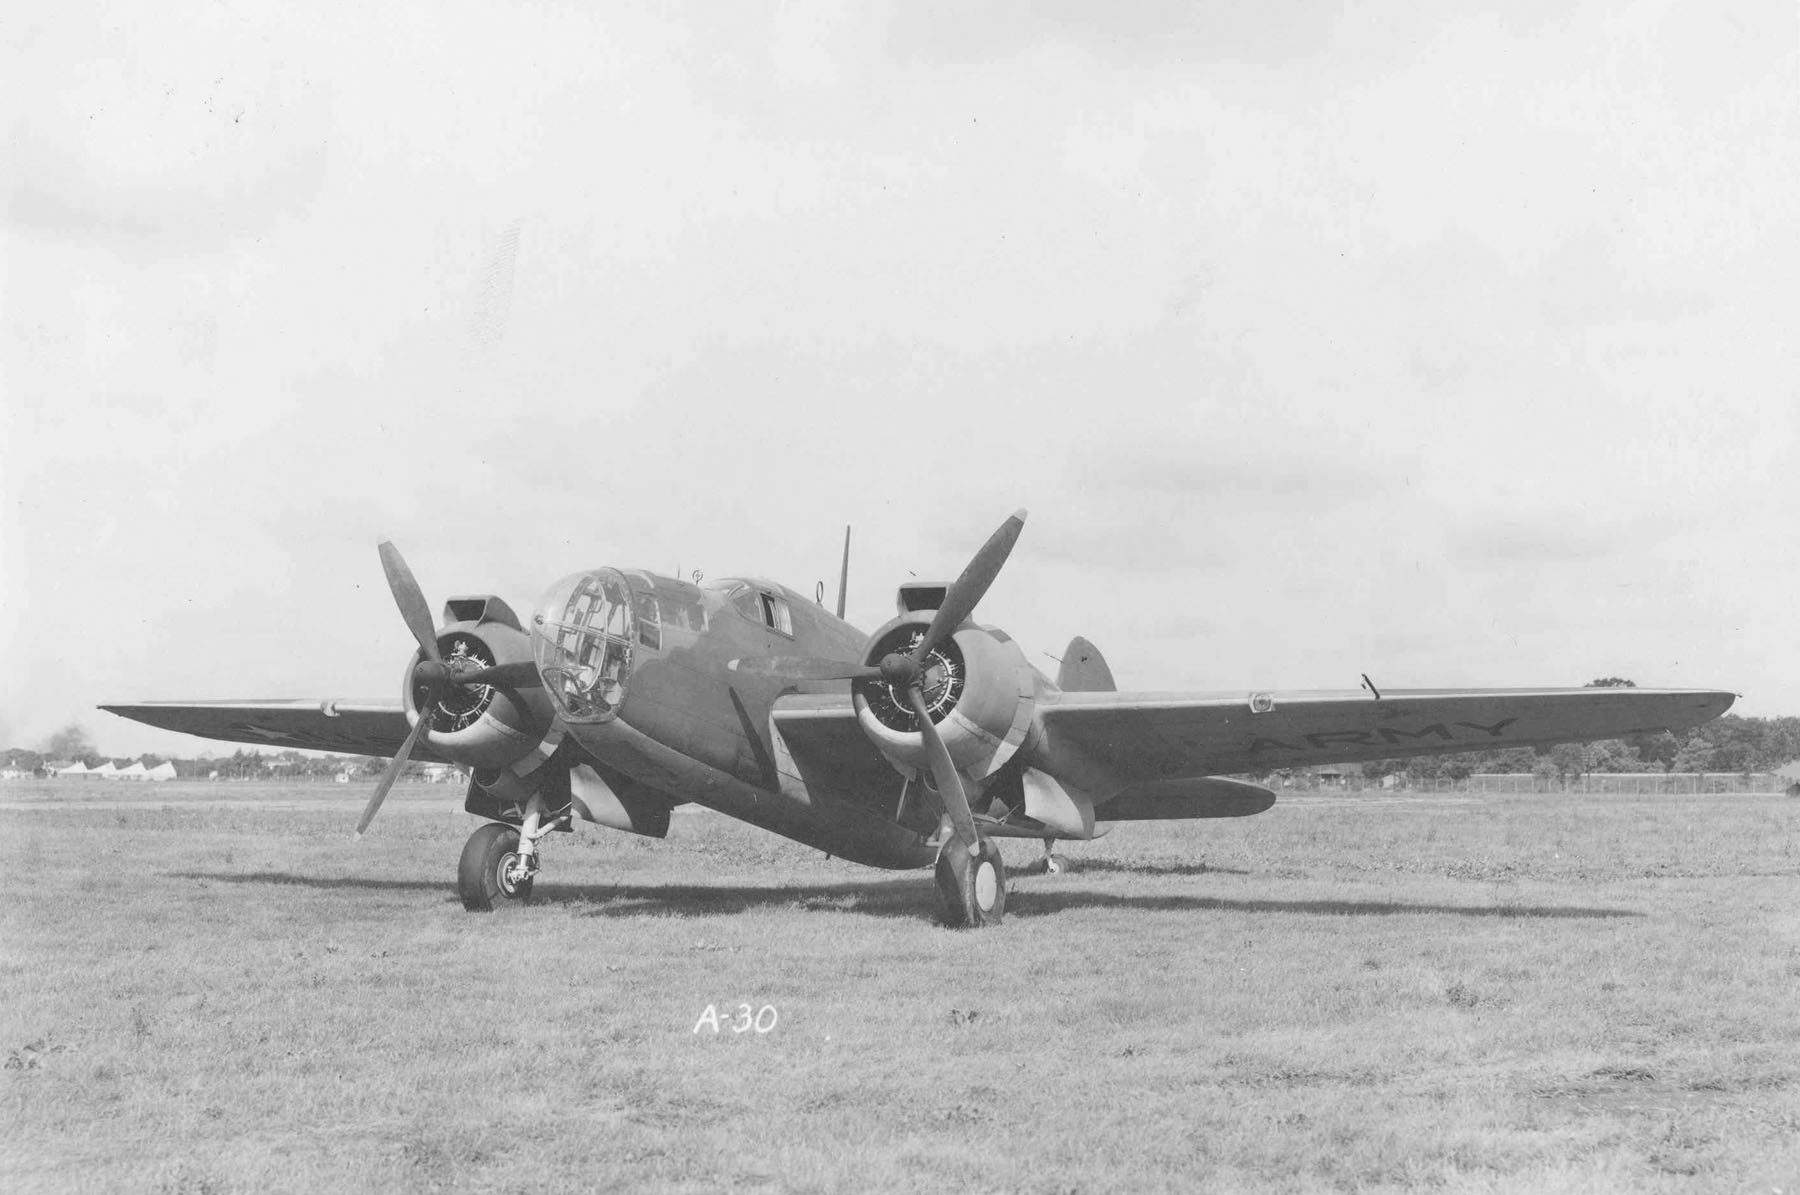 Martin A-30